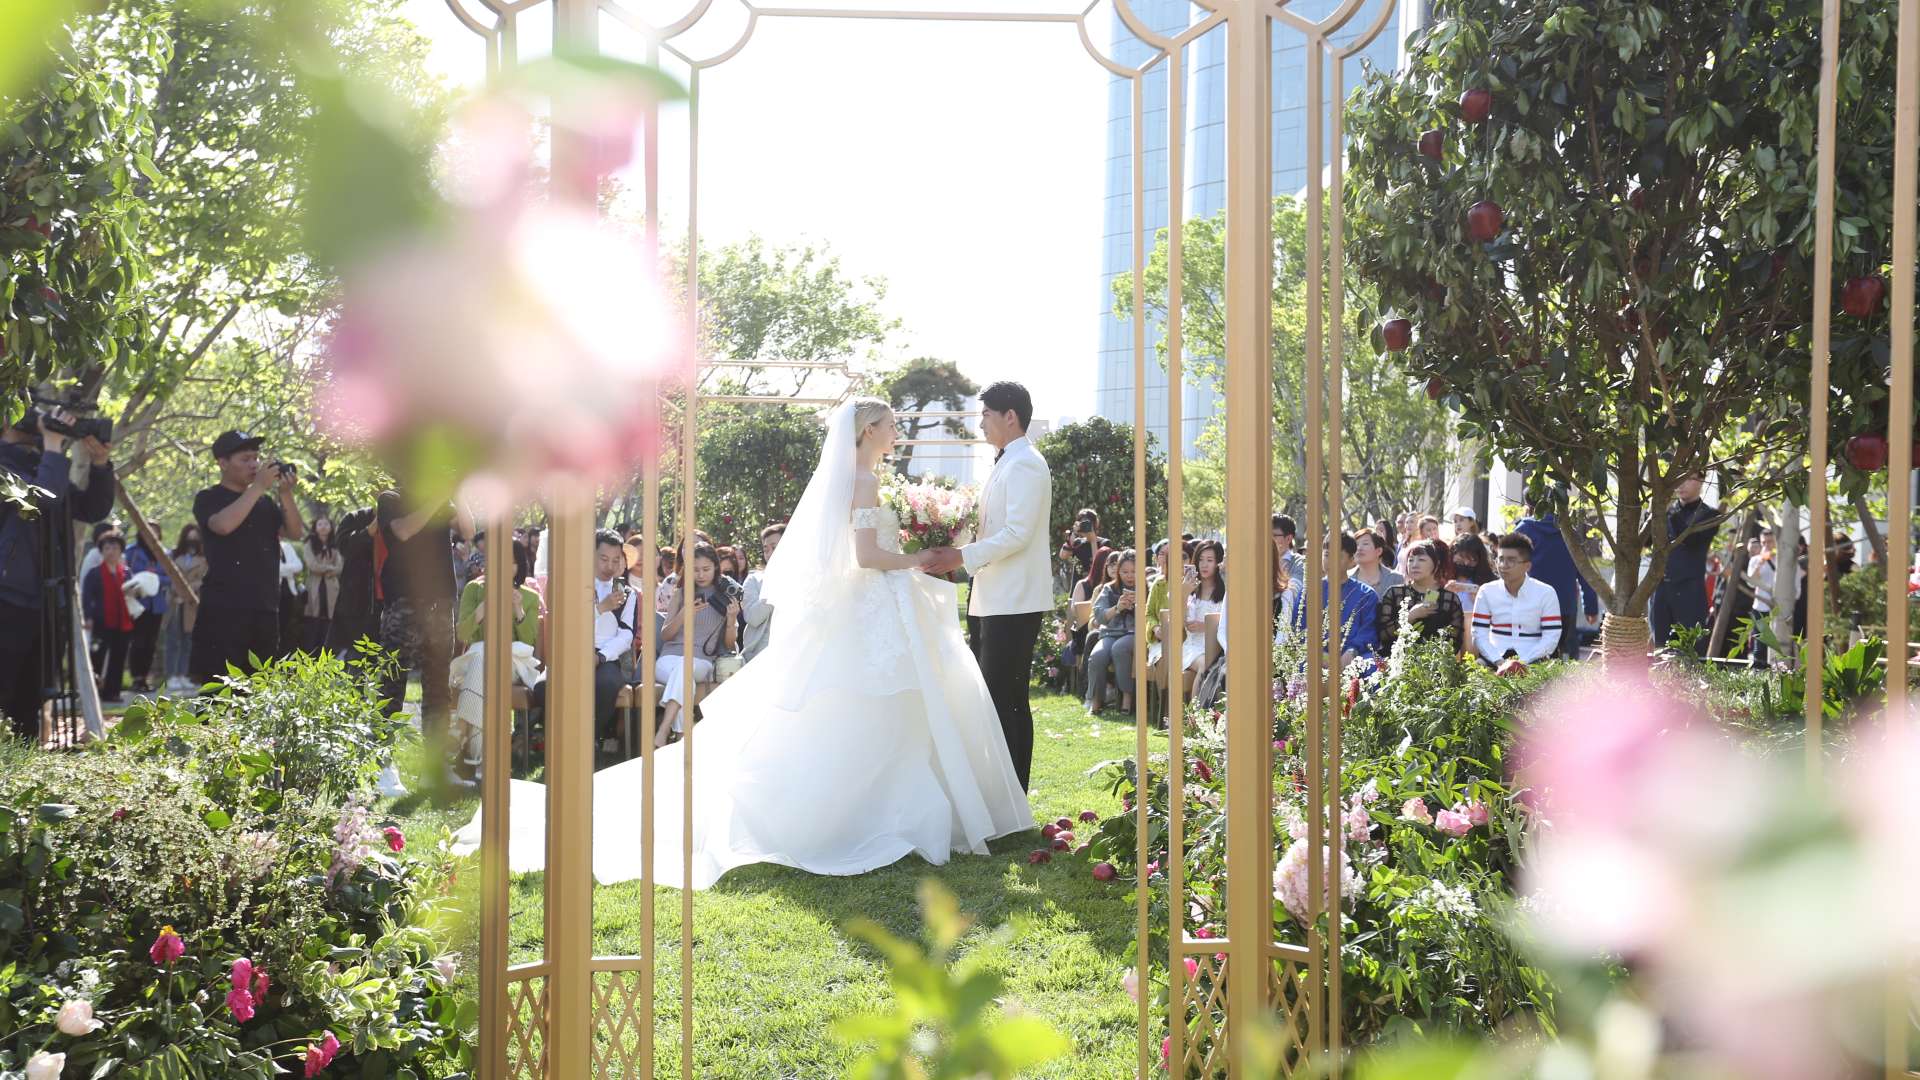 Romantic Wedding Fair At Bvlgari Garden Bvlgari Hotel Beijing